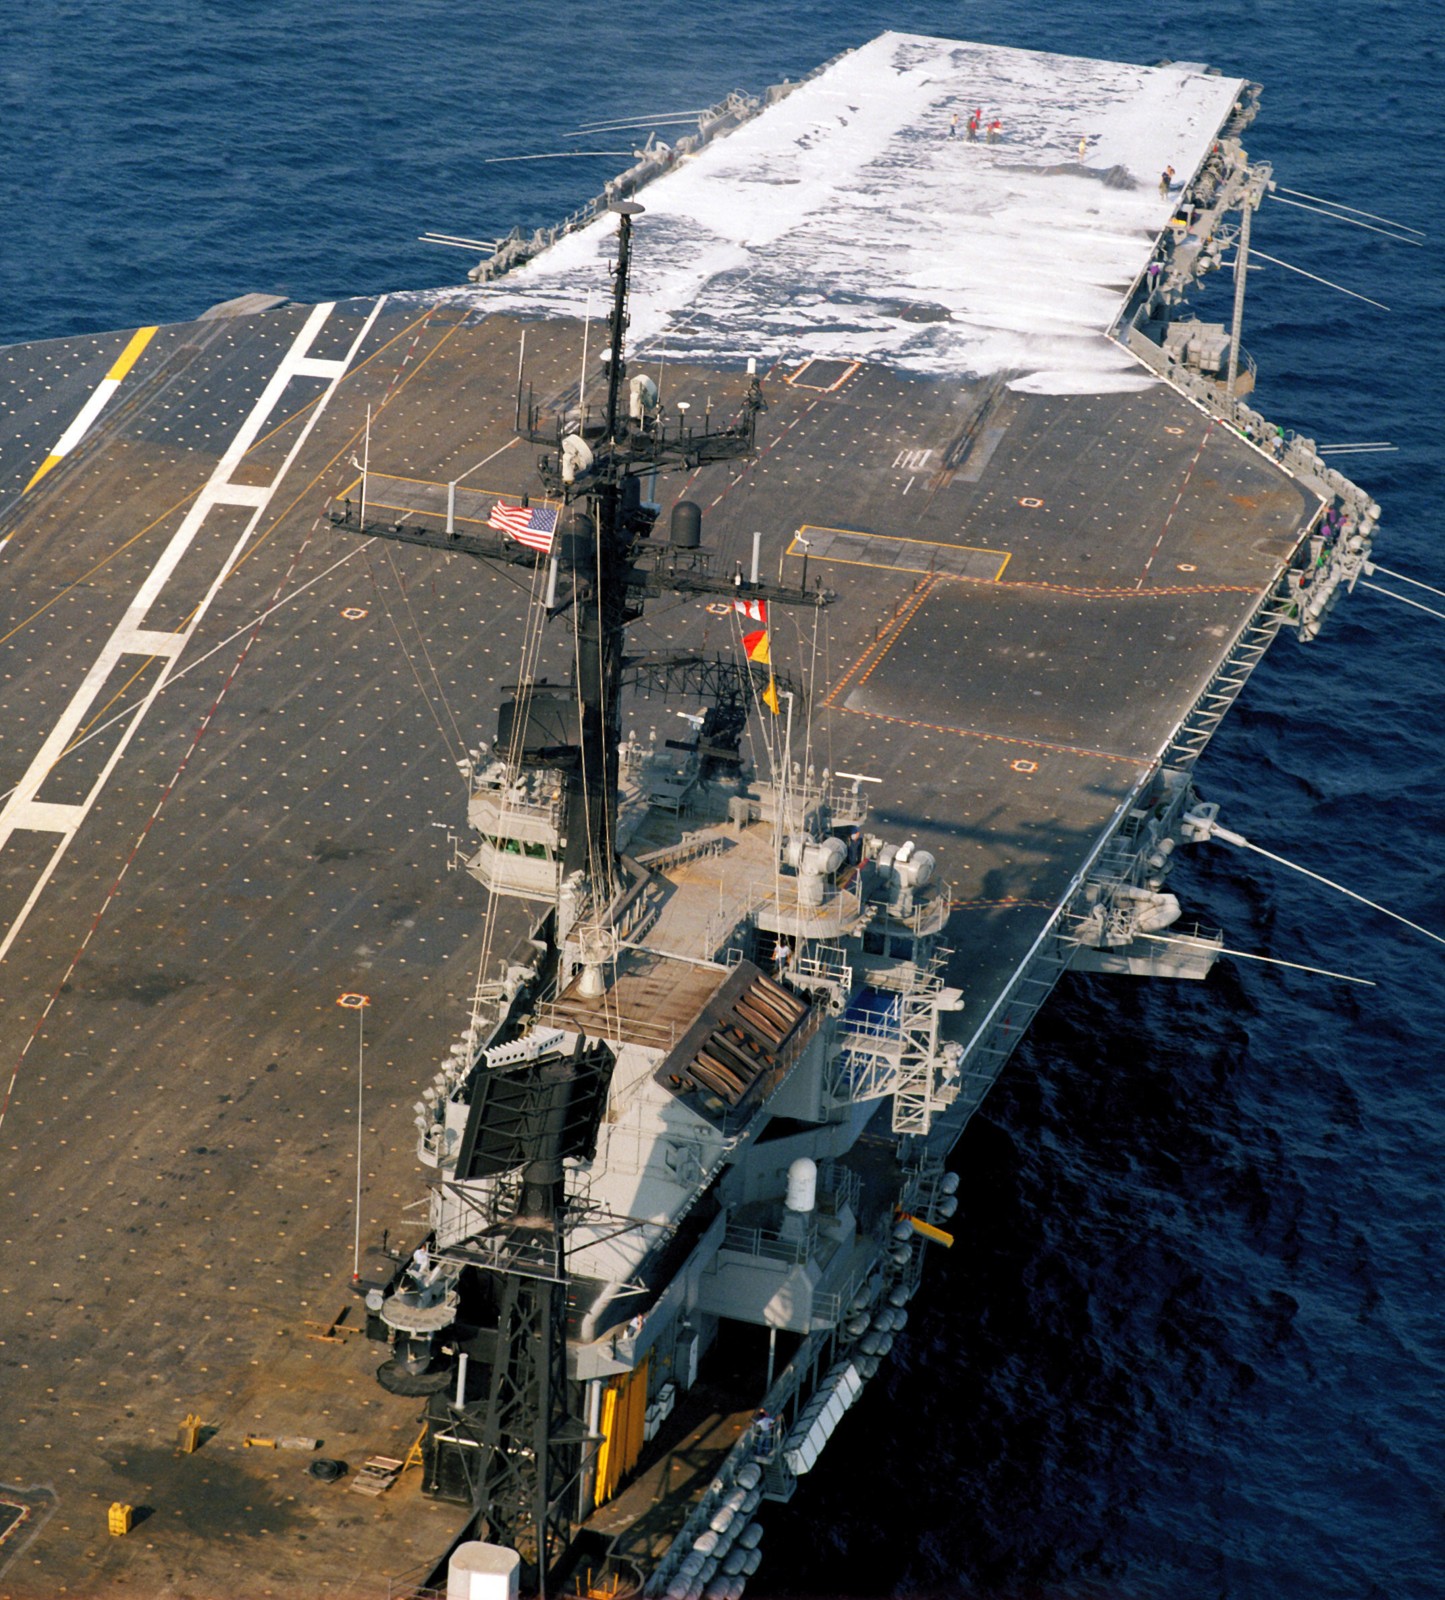 cv-67 uss john f. kennedy aircraft carrier us navy 97